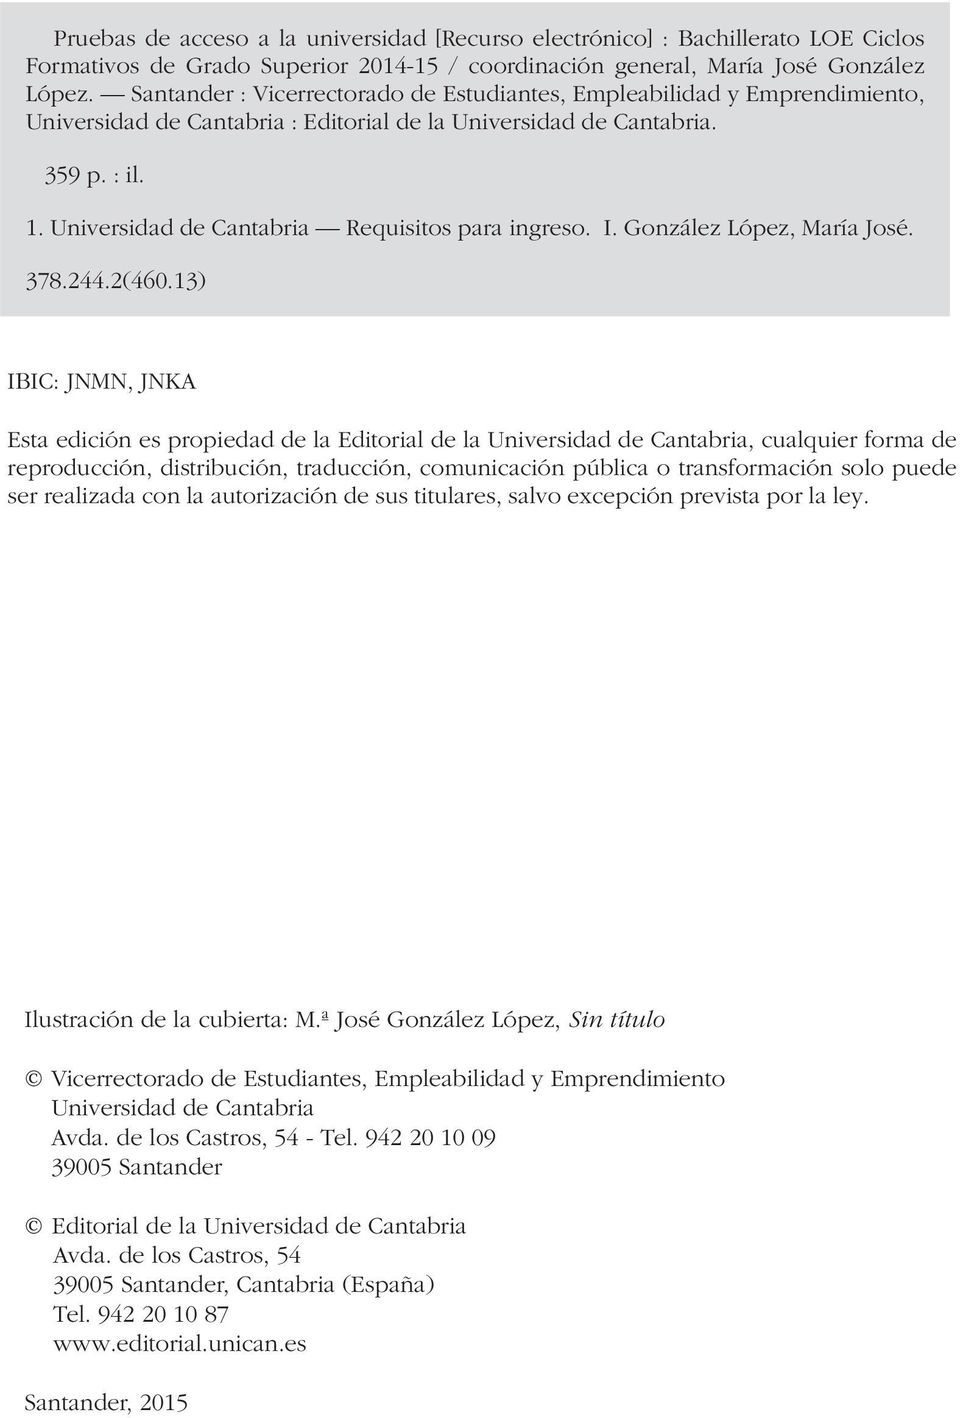 Universidad de Cantabria Requisitos para ingreso. I. González López, María José. 378.244.2(460.